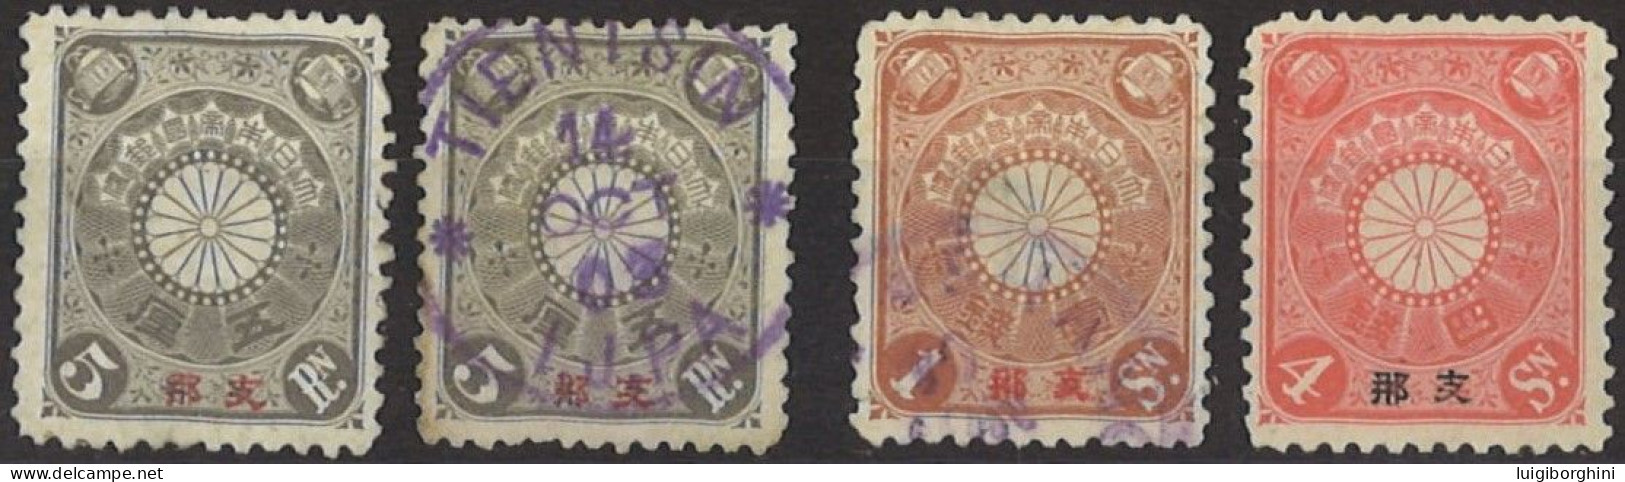 COREA 1900 - Ufficio Postale Giapponese In Corea - Korea (...-1945)